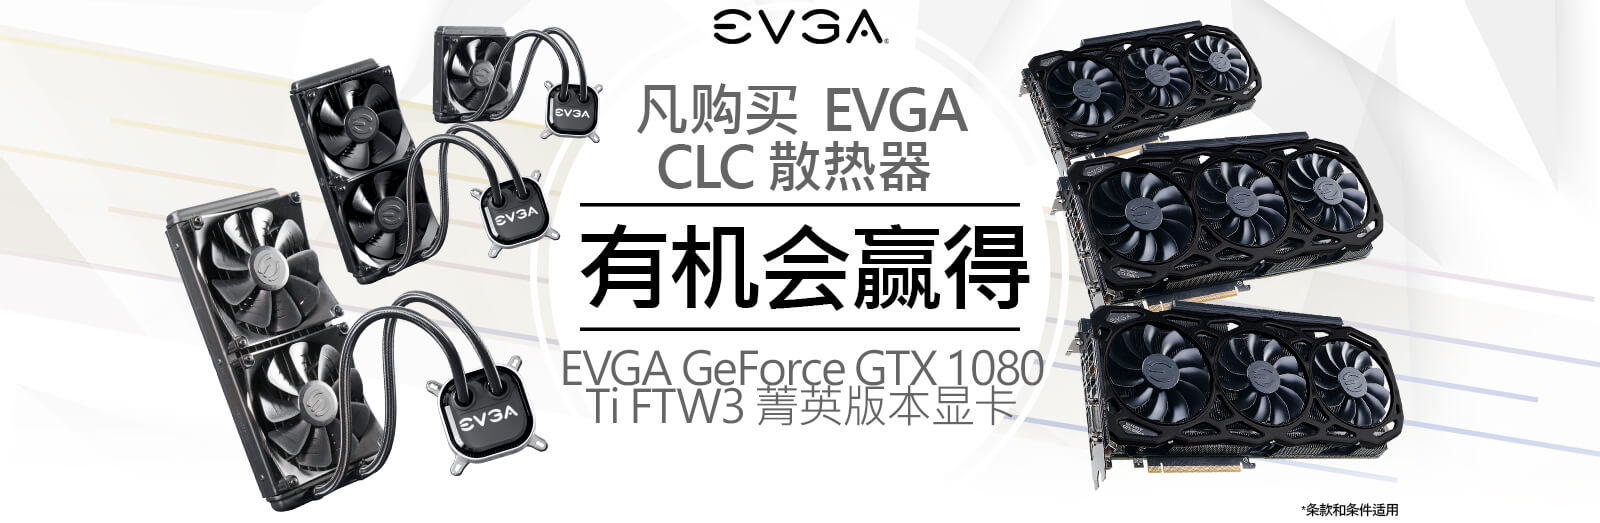 凡购买  EVGA CLC 散热器 ，有机会赢得 EVGA GeForce GTX 1080 Ti FTW3 菁英版本显卡